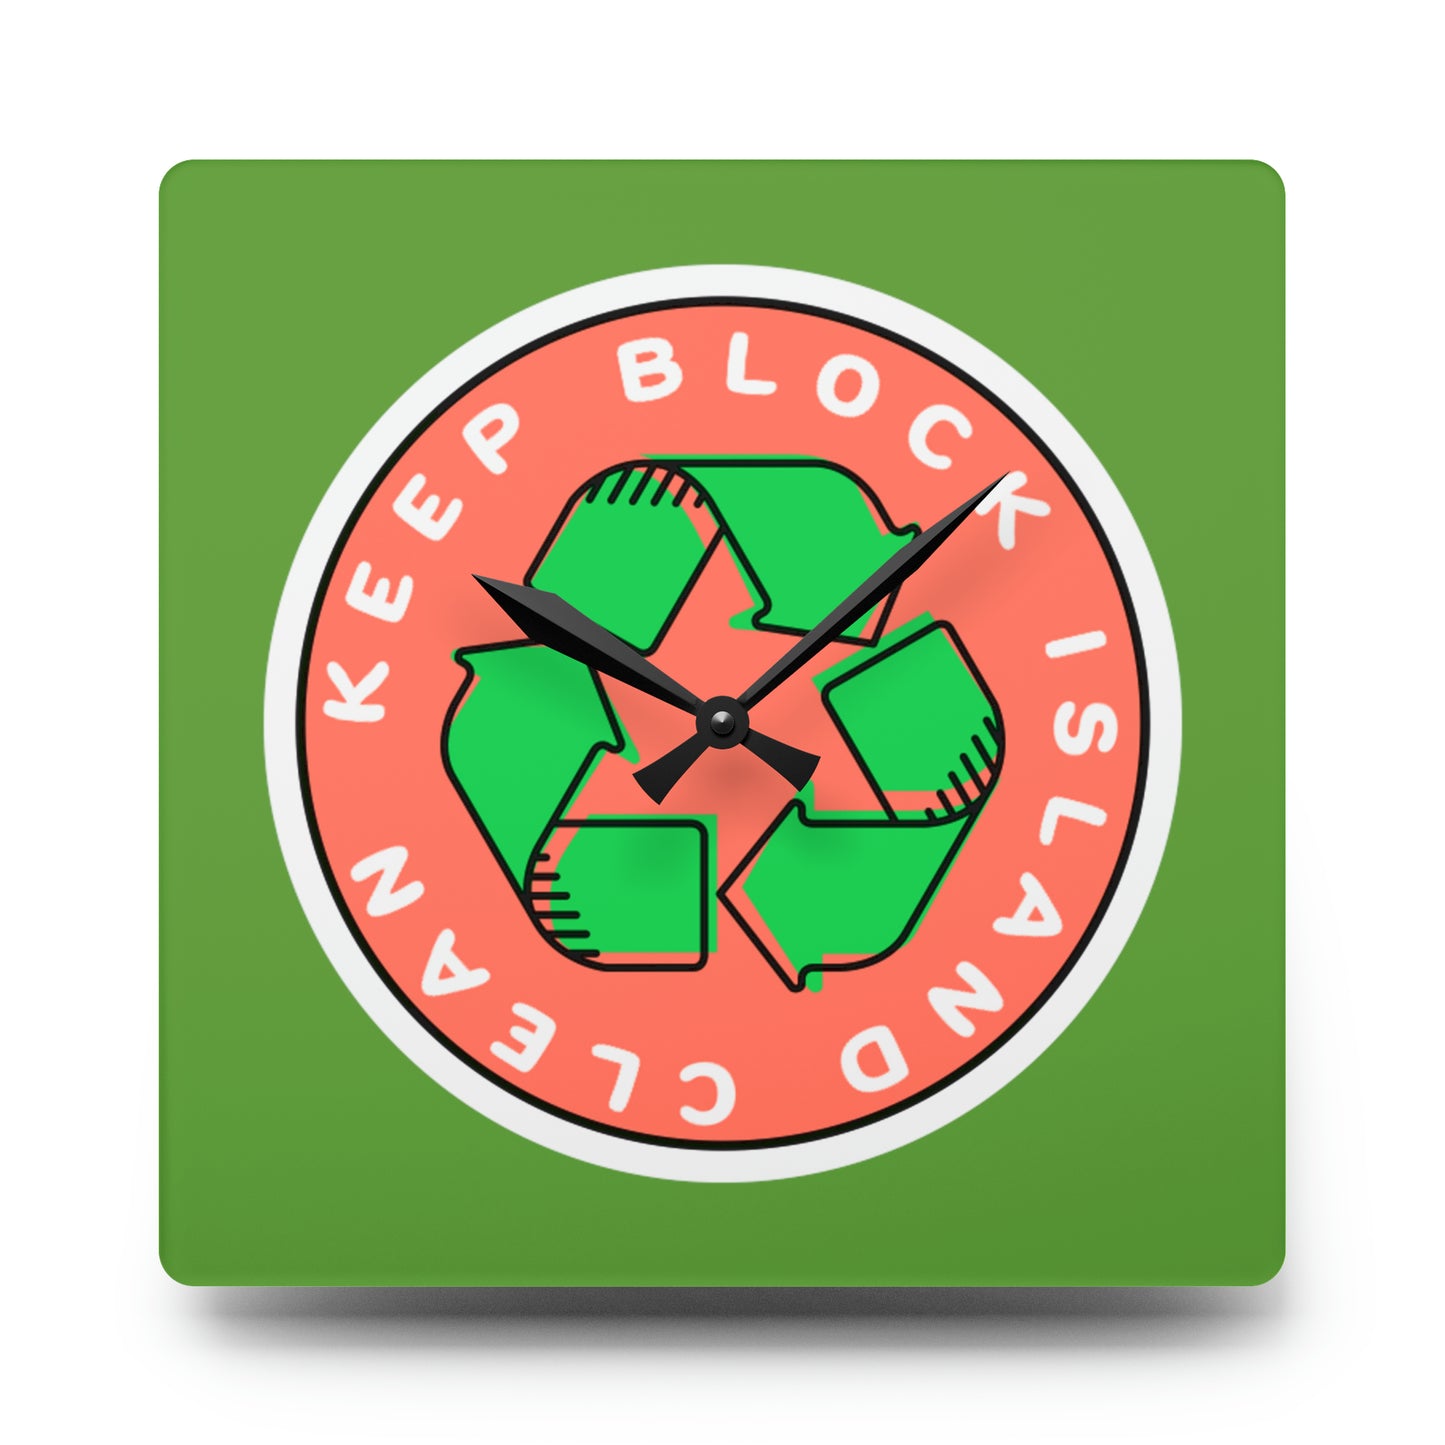 Keep Block Island Clean Wall Clock